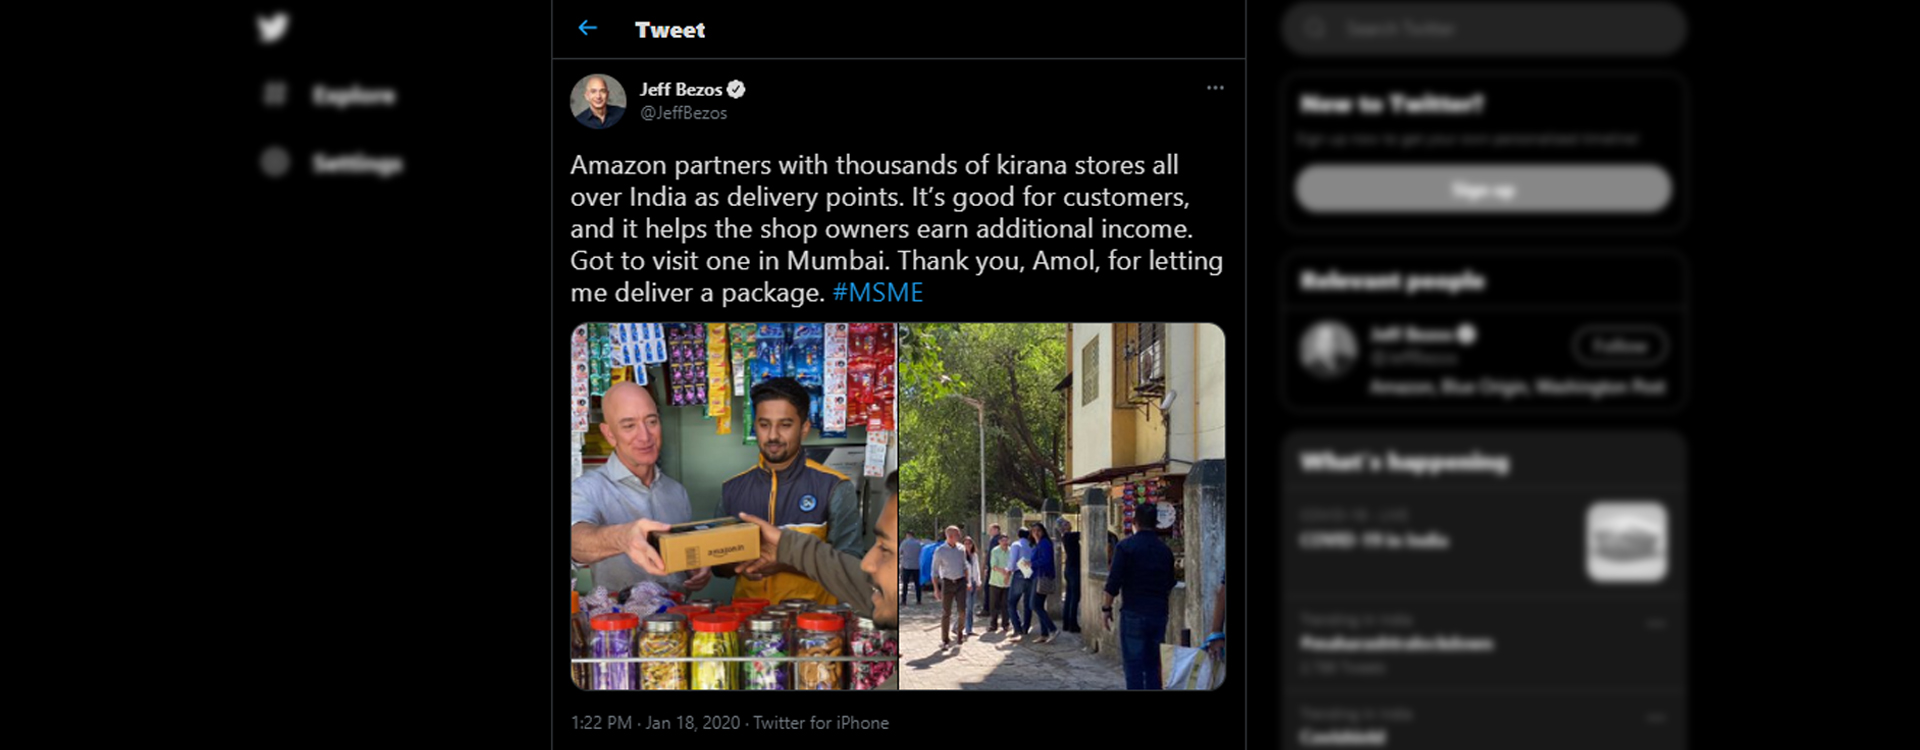 Amazon India- Jeff Bezos- Local Stores- KIrana Stores- India